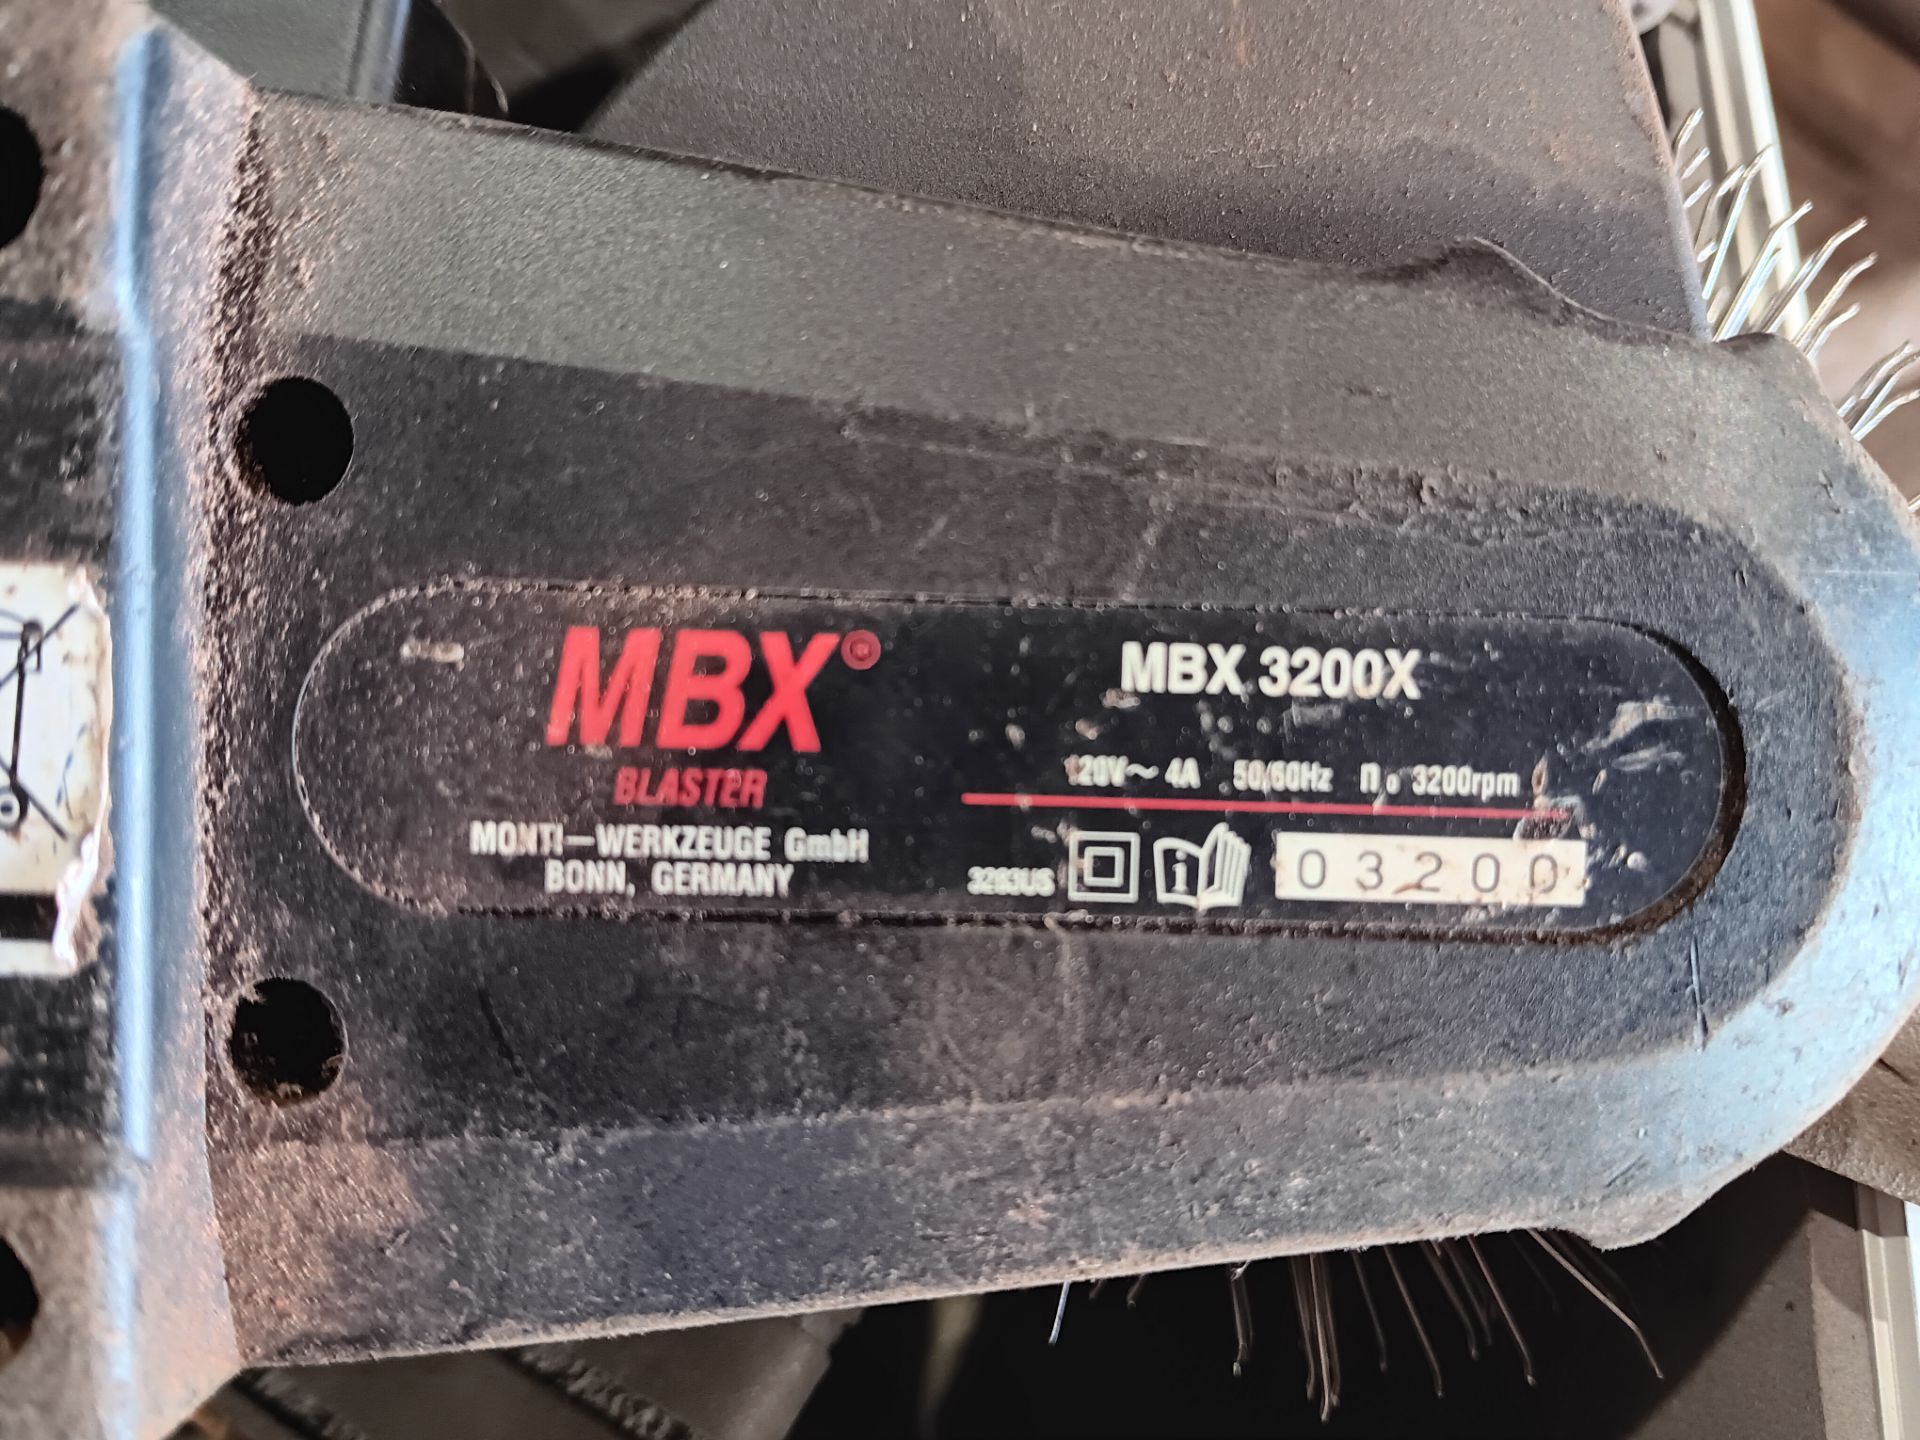 MBX 3200X blaster weld cleaner 110v - Image 3 of 5